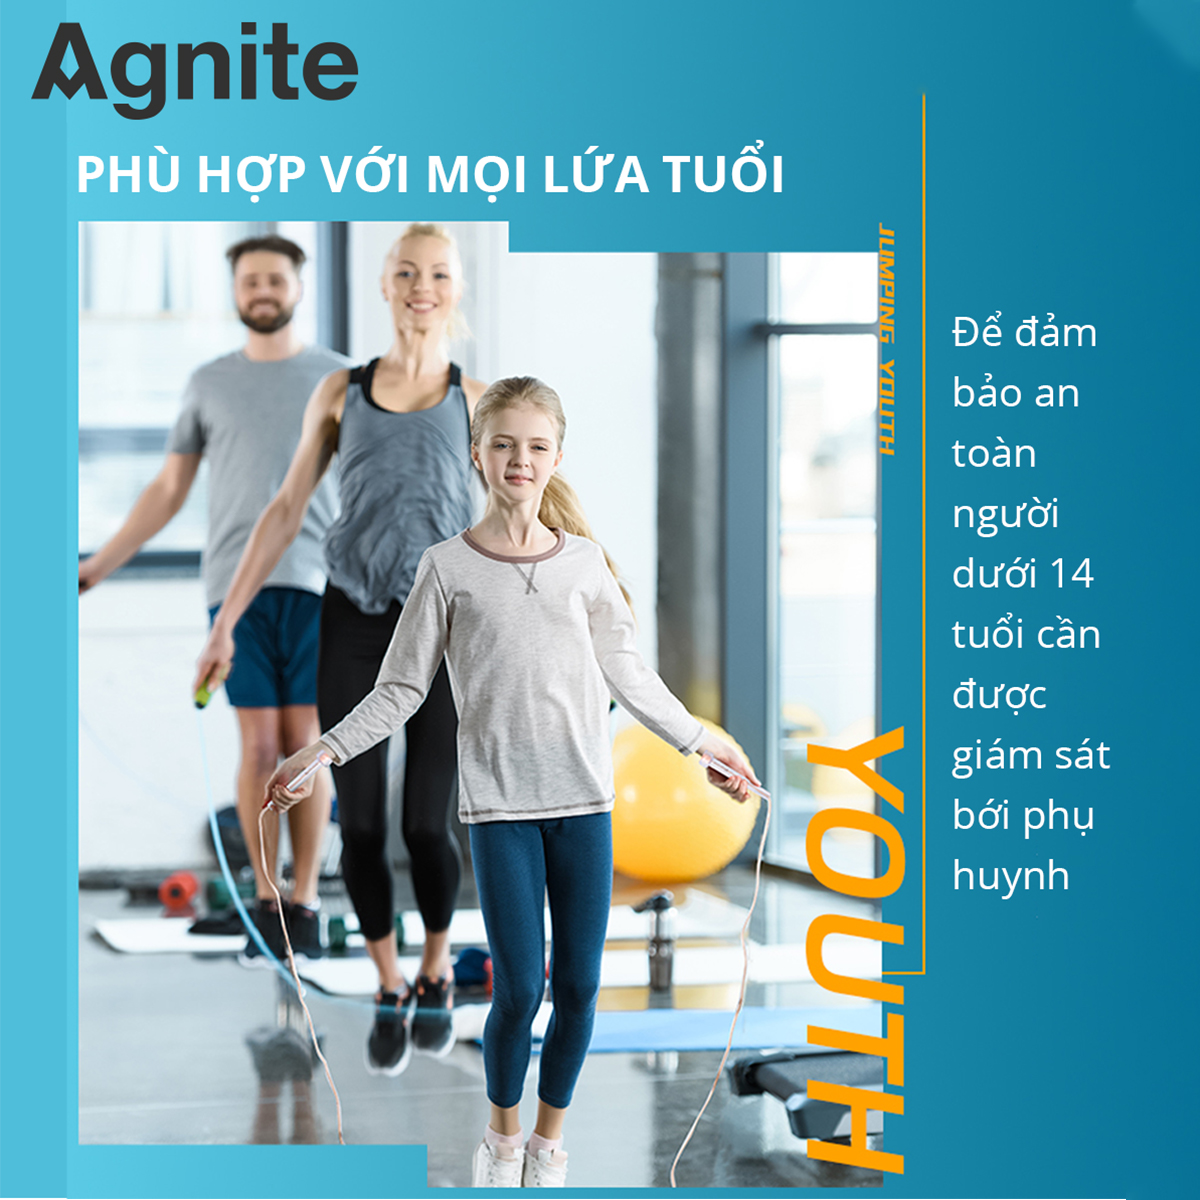 Dây nhảy thể dục sợi đan đếm số tự động Agnite - Chất lượng chuyên nghiệp siêu bền - Màu Hồng/ Xanh dương/ Xanh lá - F4111